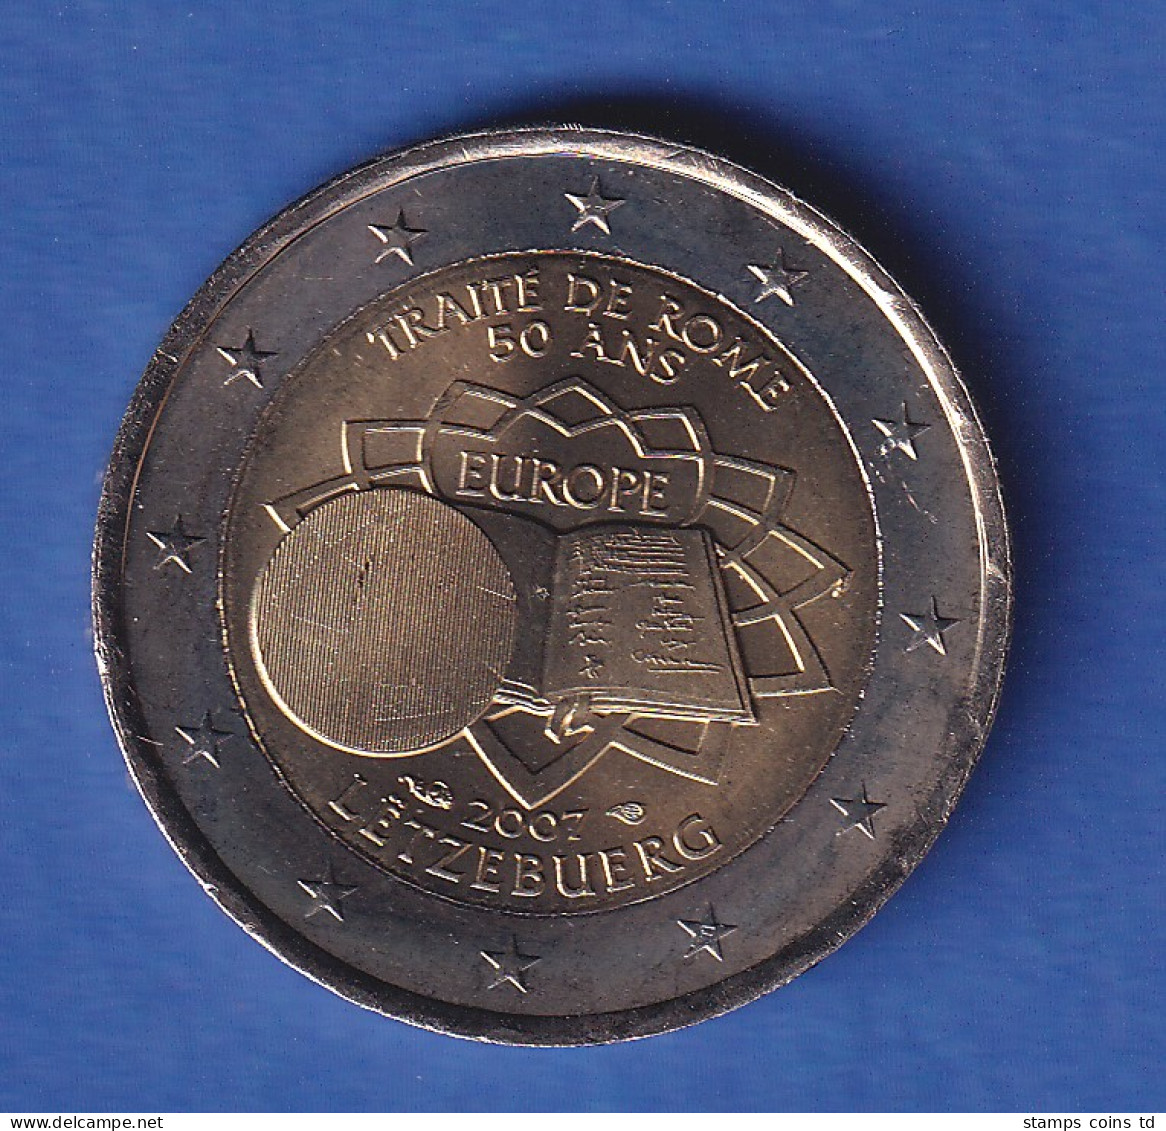 Luxemburg 2007 2-Euro-Sondermünze Römische Verträge Bankfr. Unzirk.  - Lussemburgo